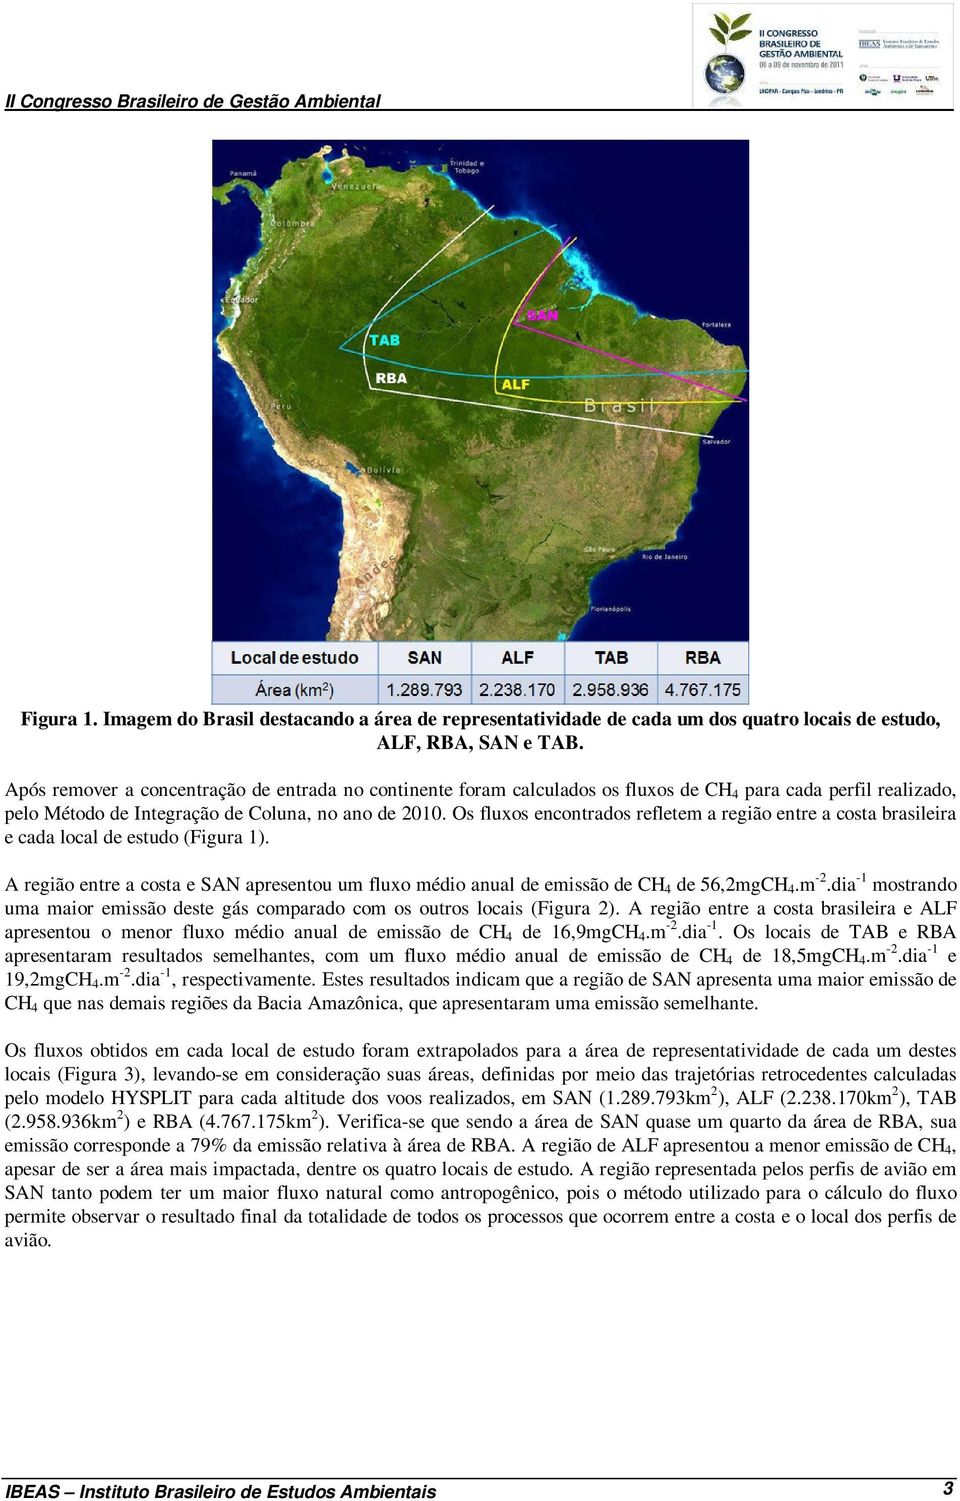 Os fluxos encontrados refletem a região entre a costa brasileira e cada local de estudo (Figura 1). A região entre a costa e SAN apresentou um fluxo médio anual de emissão de CH 4 de 56,2mgCH 4.m -2.